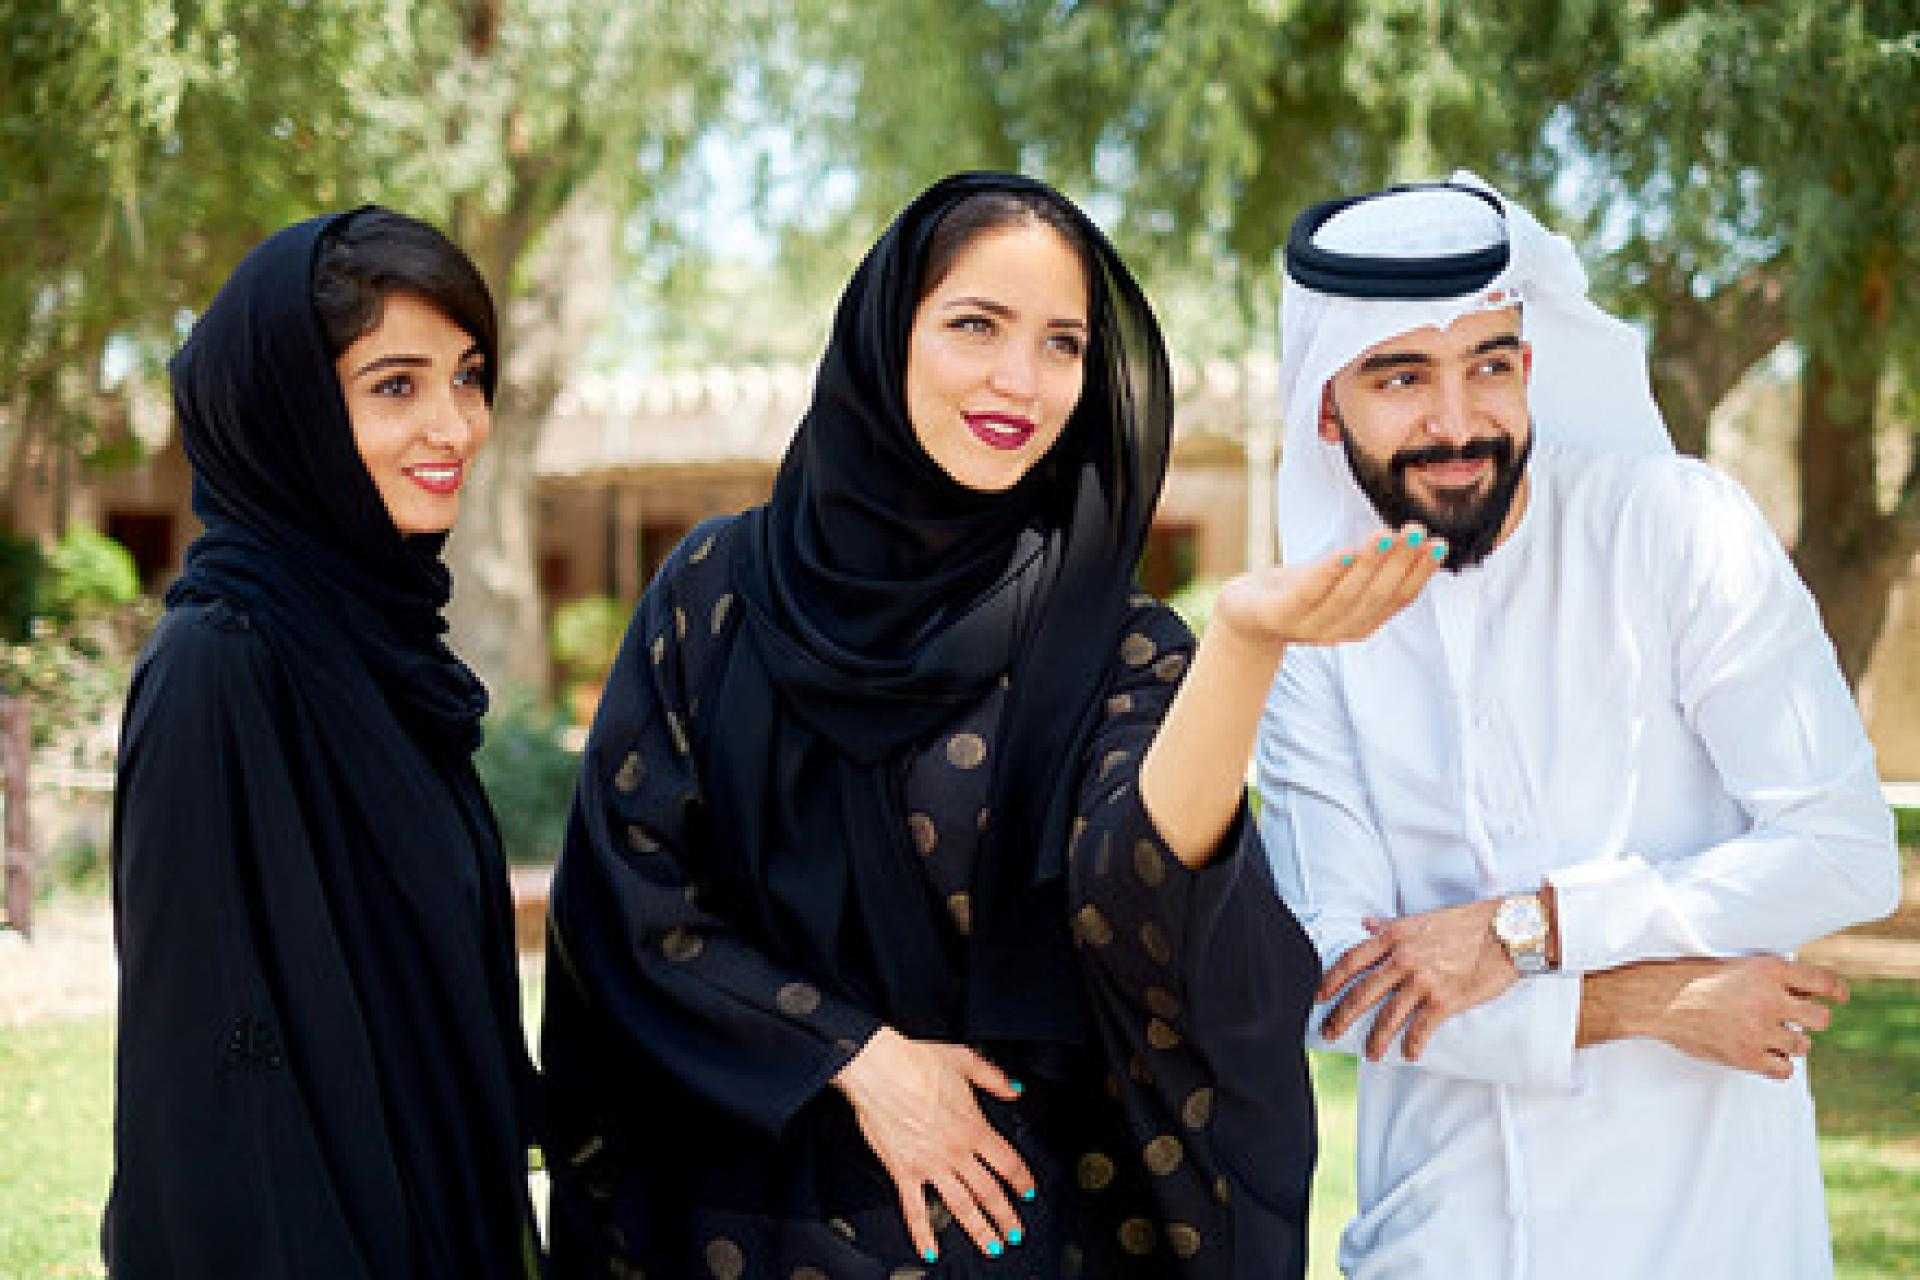 Послушать мусульманский. Арабы с женами. Арабская семья. Жены арабских шейхов. Семья в арабских Эмиратах.